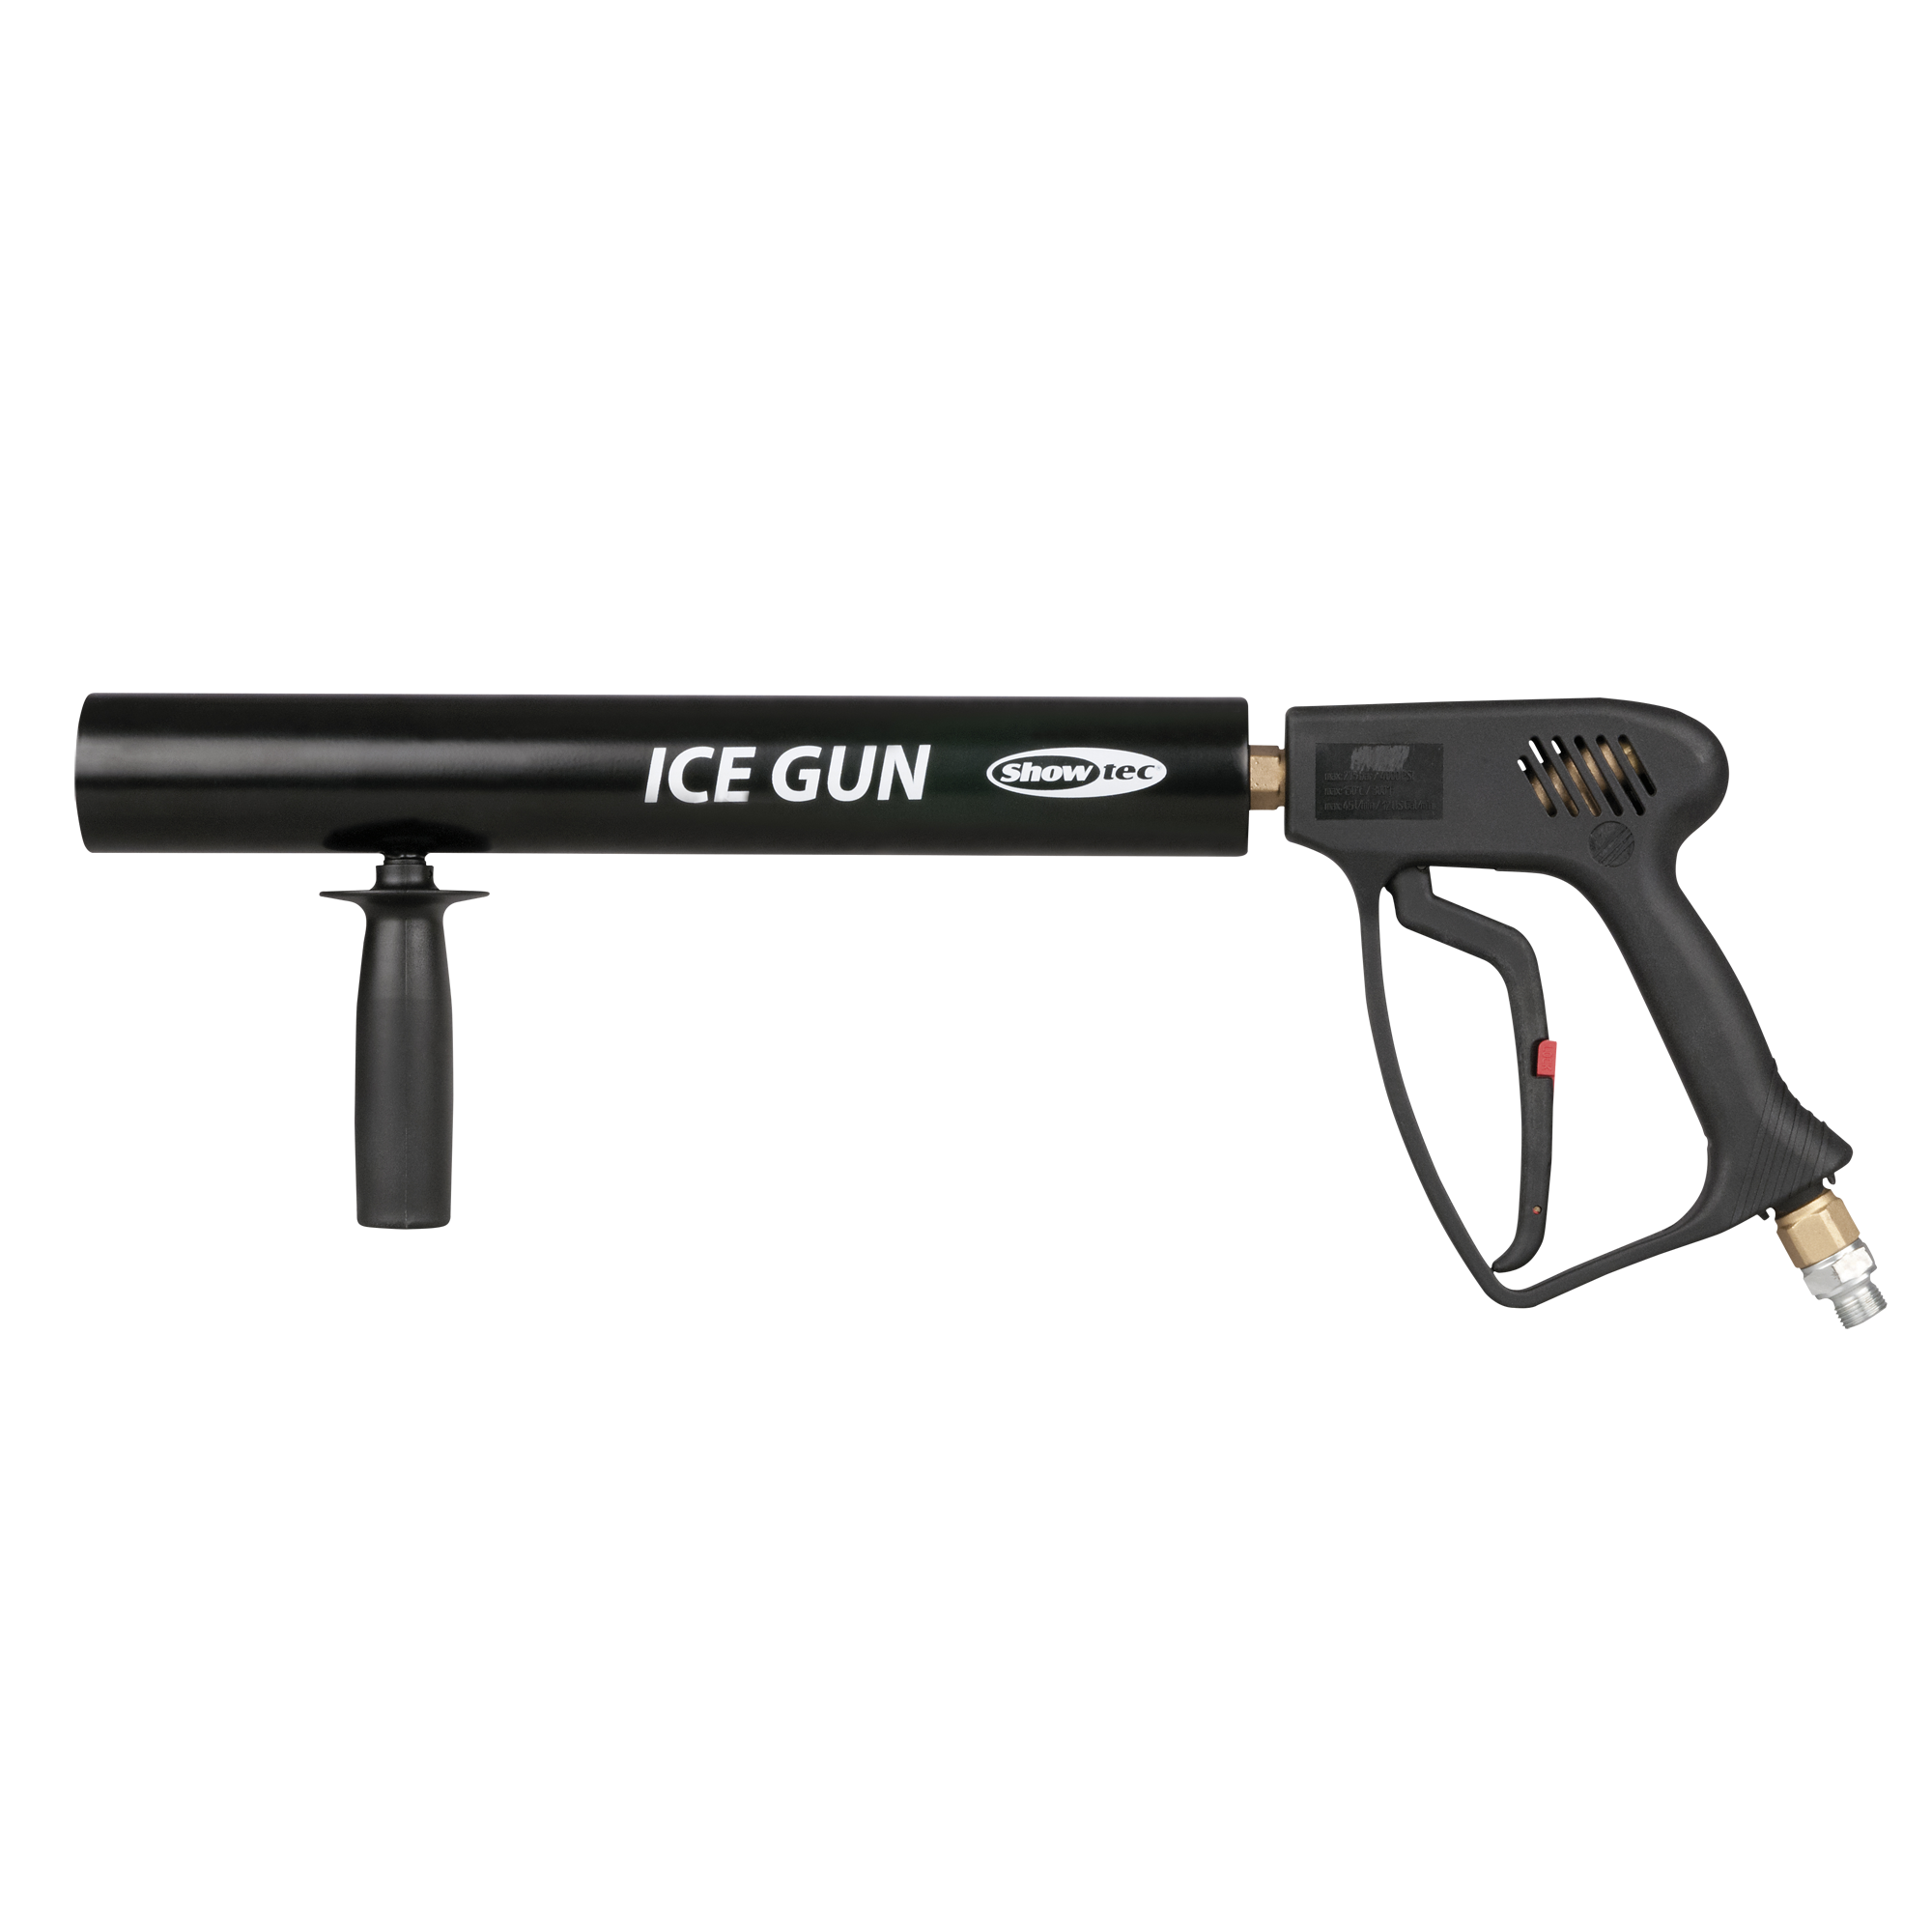 FX Ice Gun - Onlinediscowinkel.nl